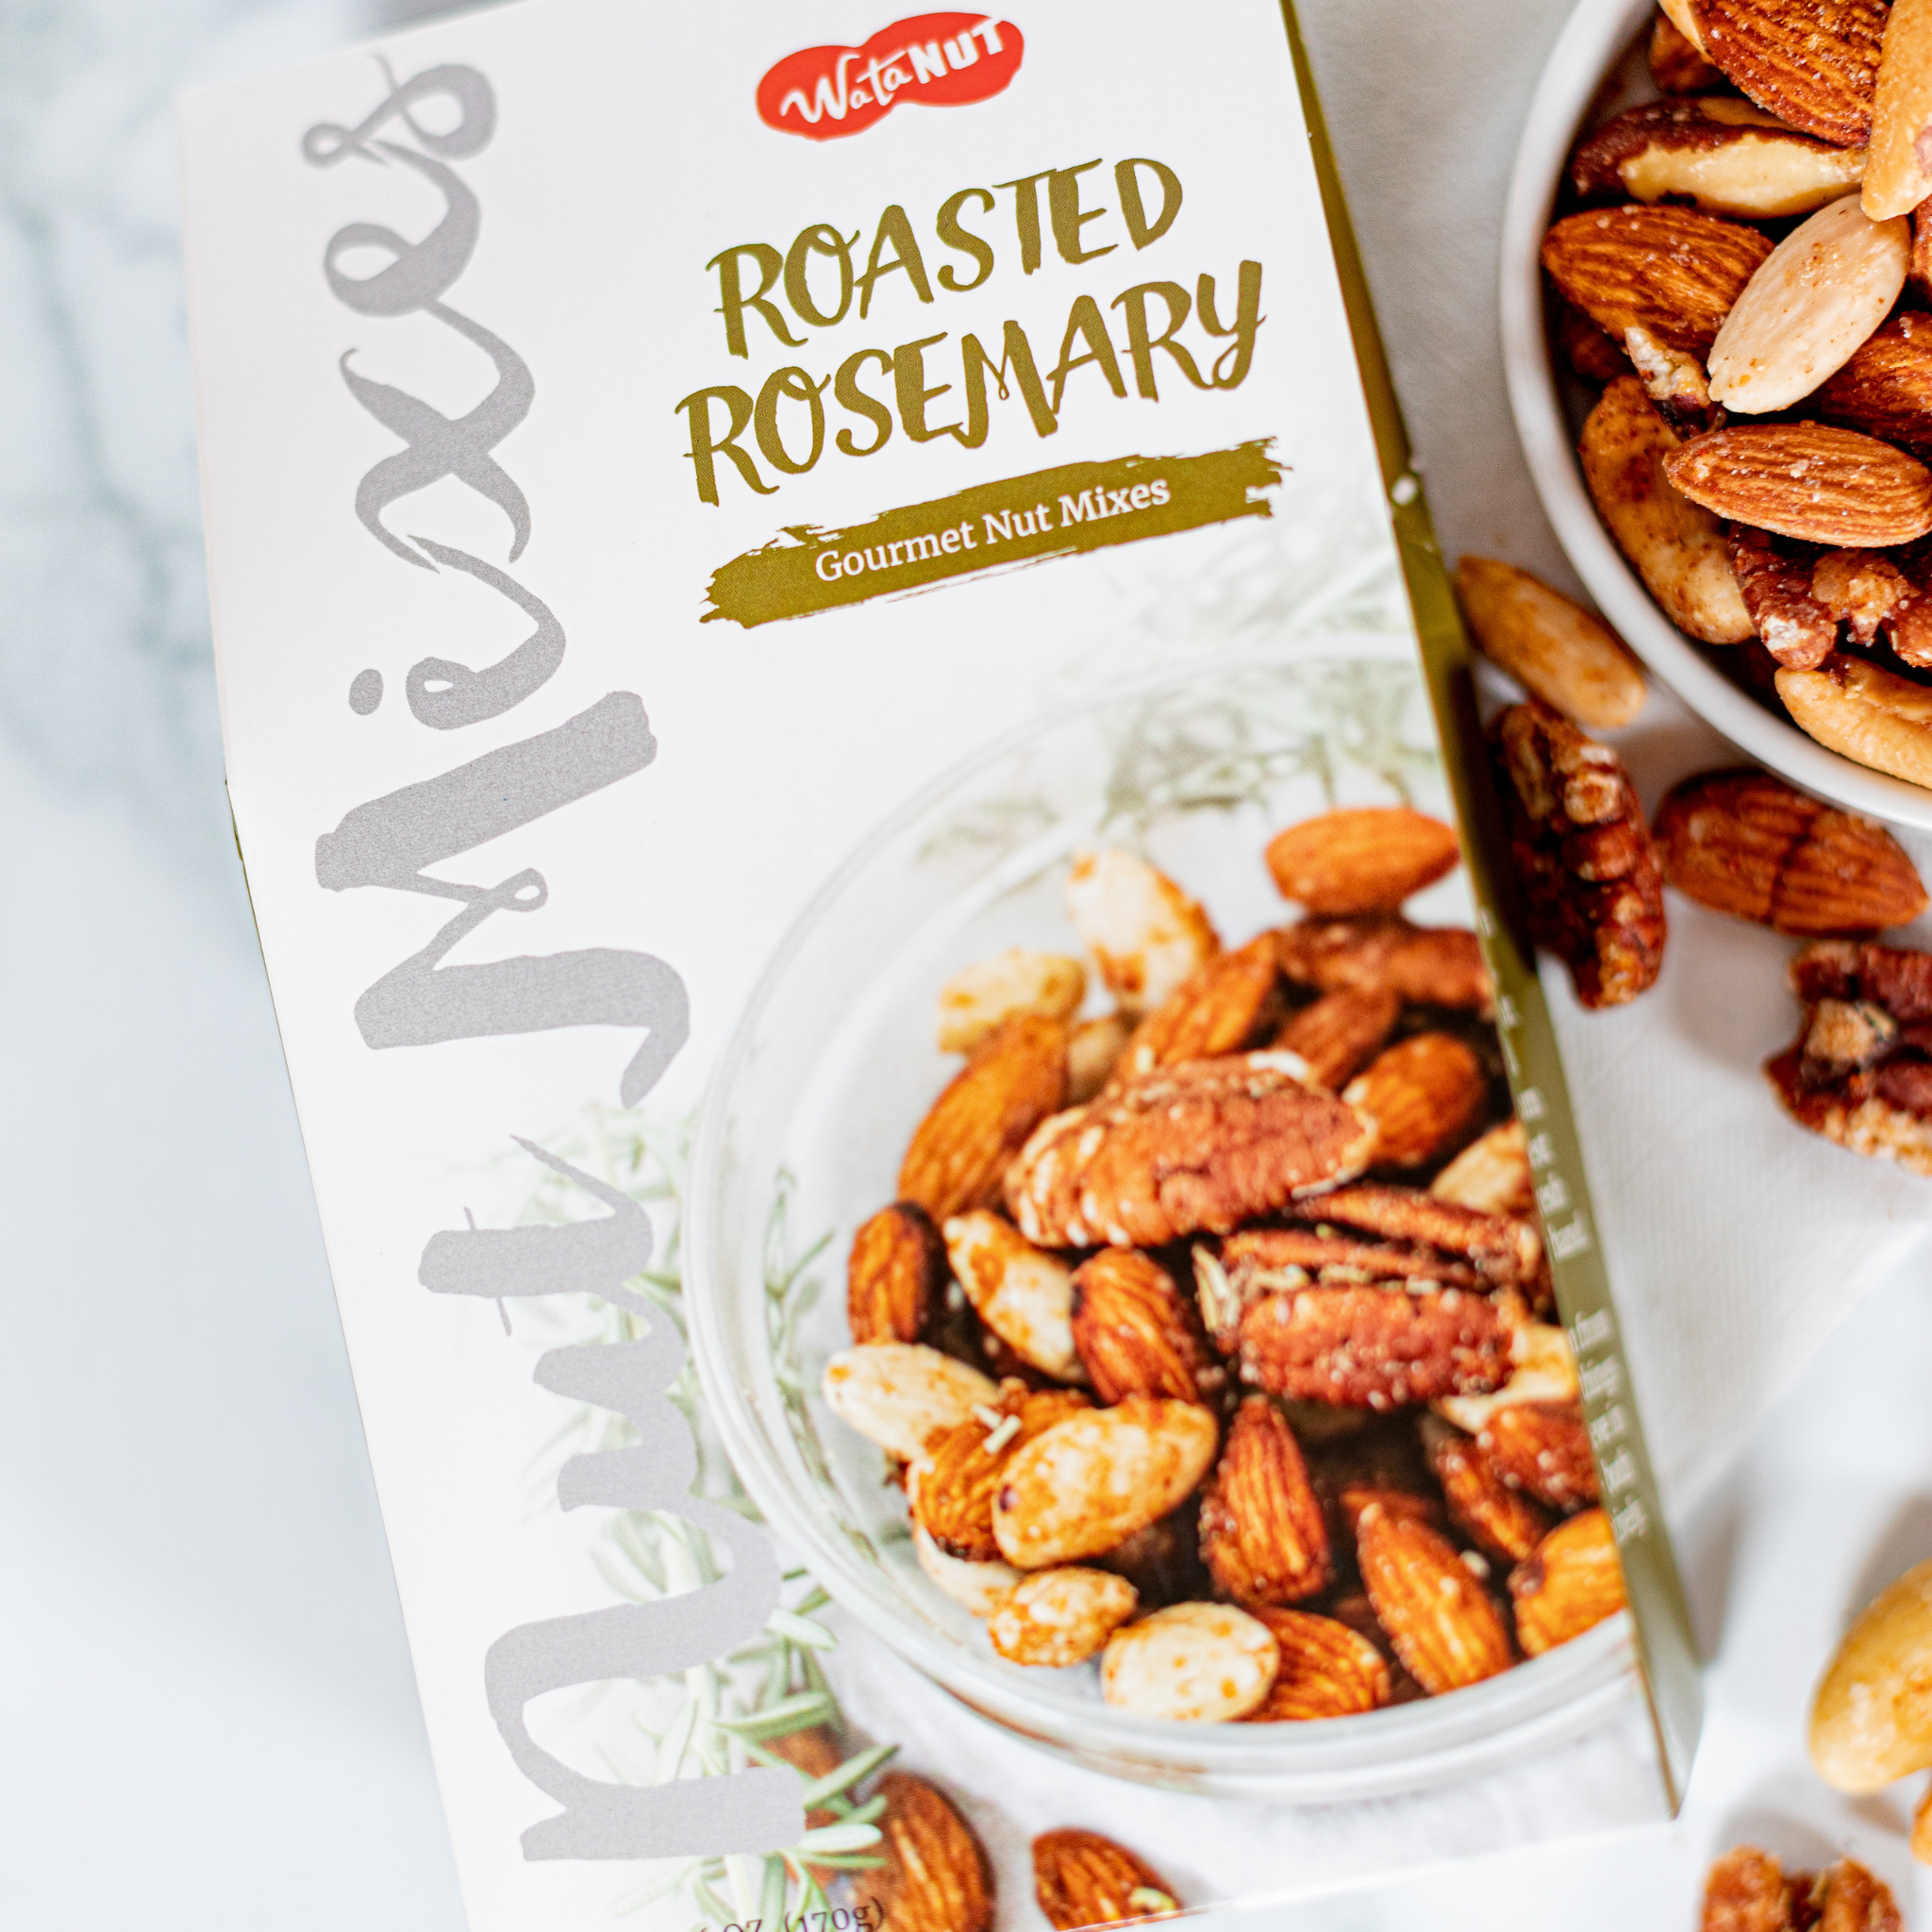 Roasted Rosemary Mixed Nuts